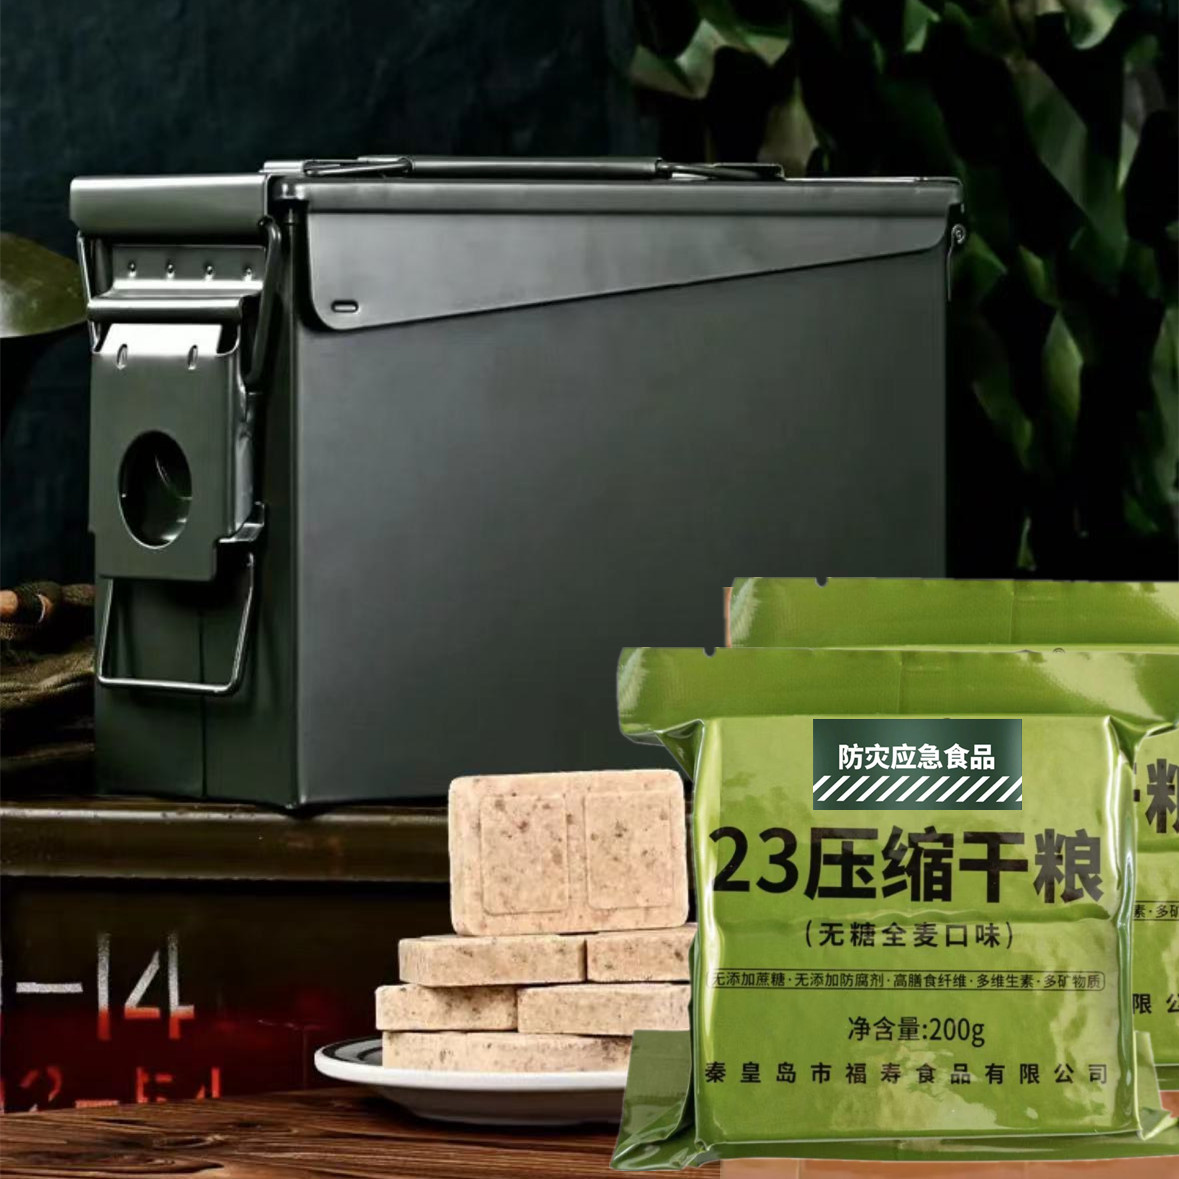 【无添加蔗糖】23型/全麦味/压缩饼干/2400g/全麦口味/三防铁桶